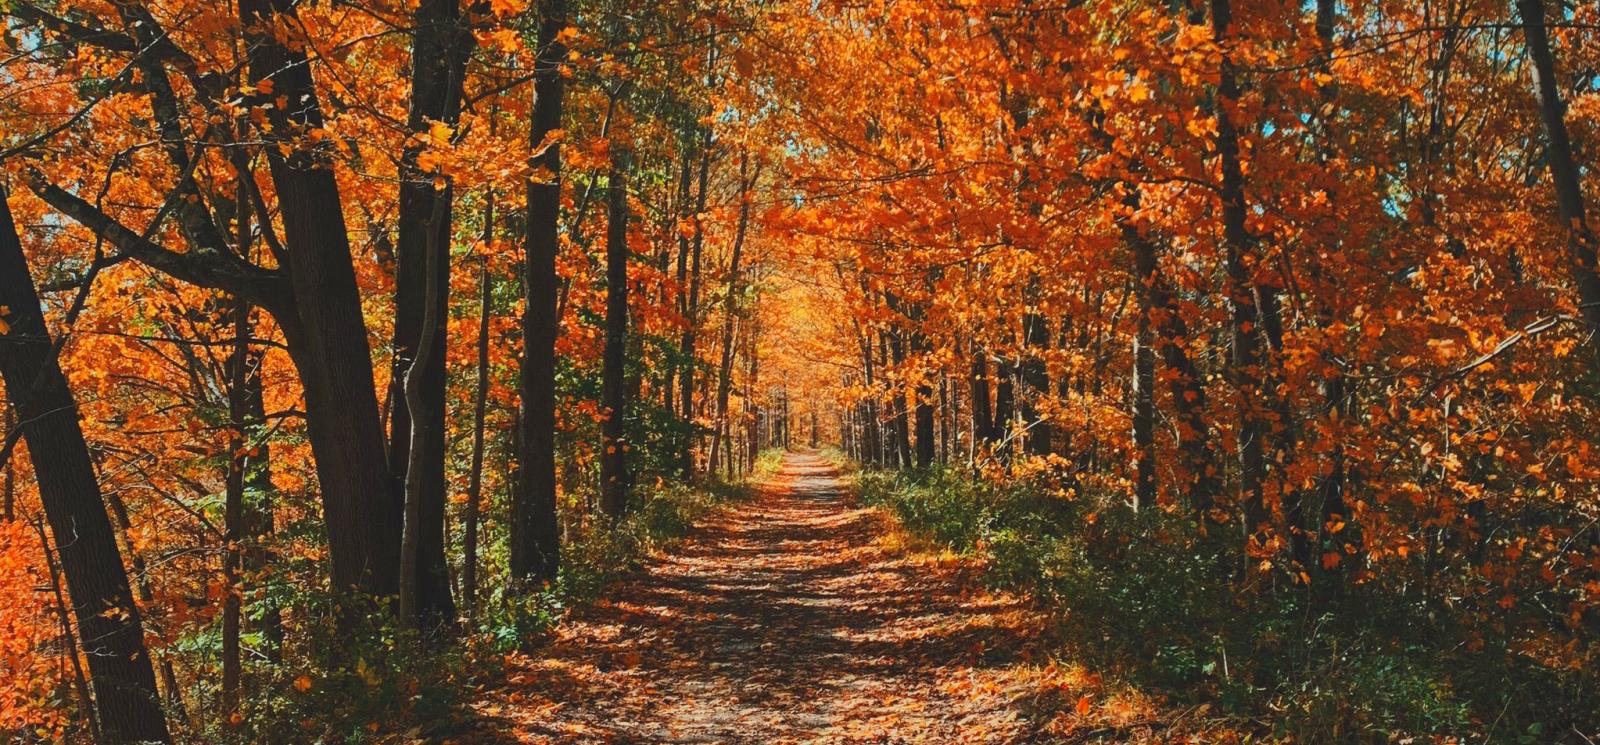 Una hermosa escena de un camino a través del follaje de otoño.